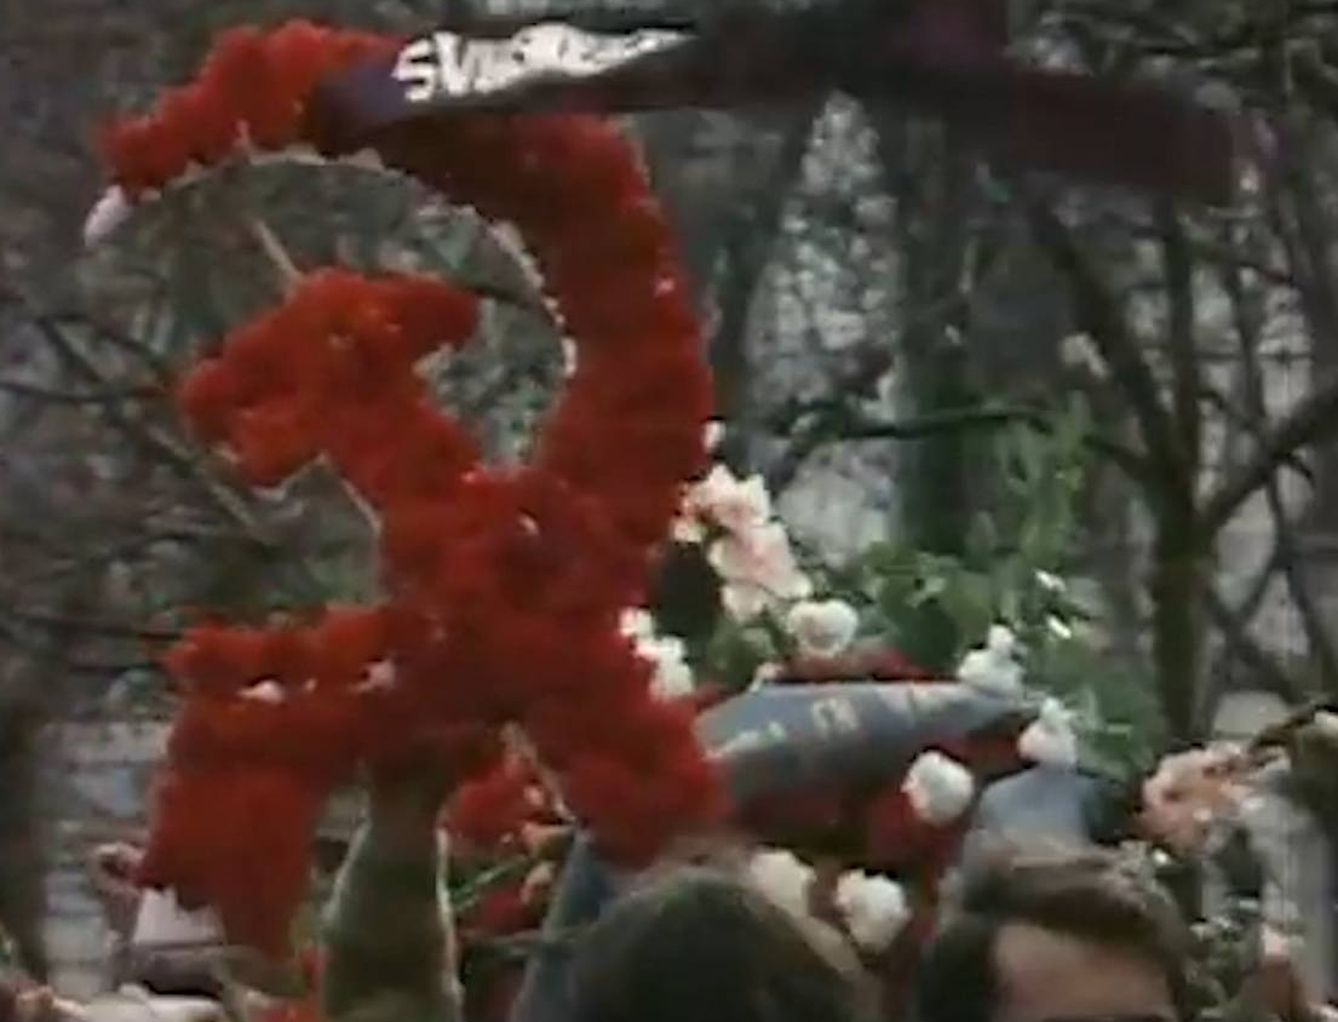 Corona de flores con el símbolo comunista de la hoz y el martillo.